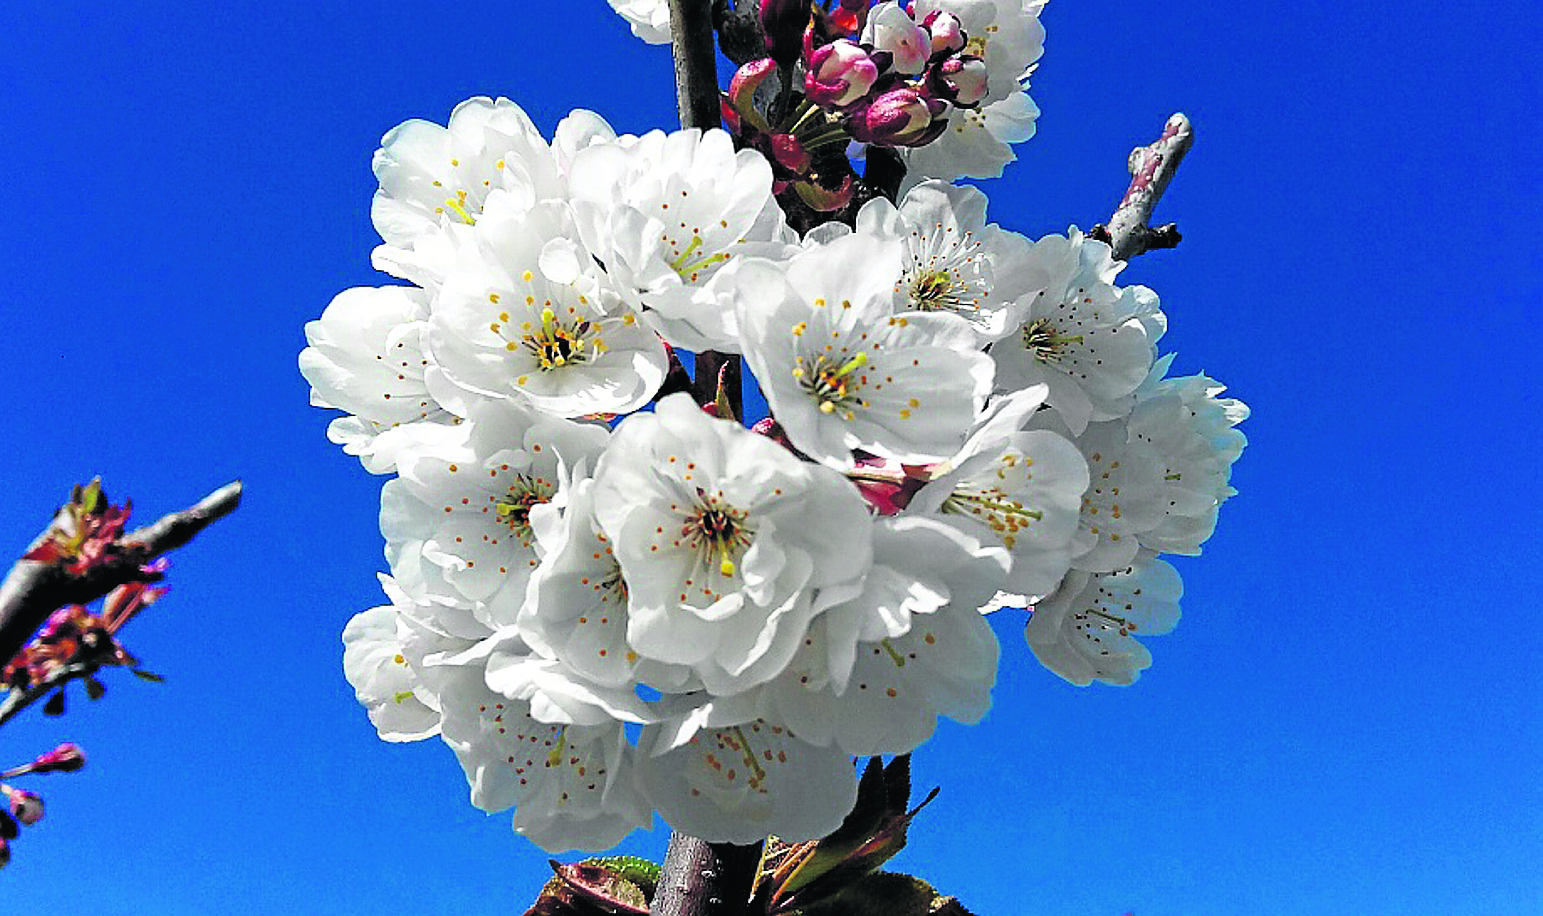 Les cerisiers, en l'occurrence en fleur, sont l'une des cultures ligneuses ayant une grande importance économique dans la Communauté.